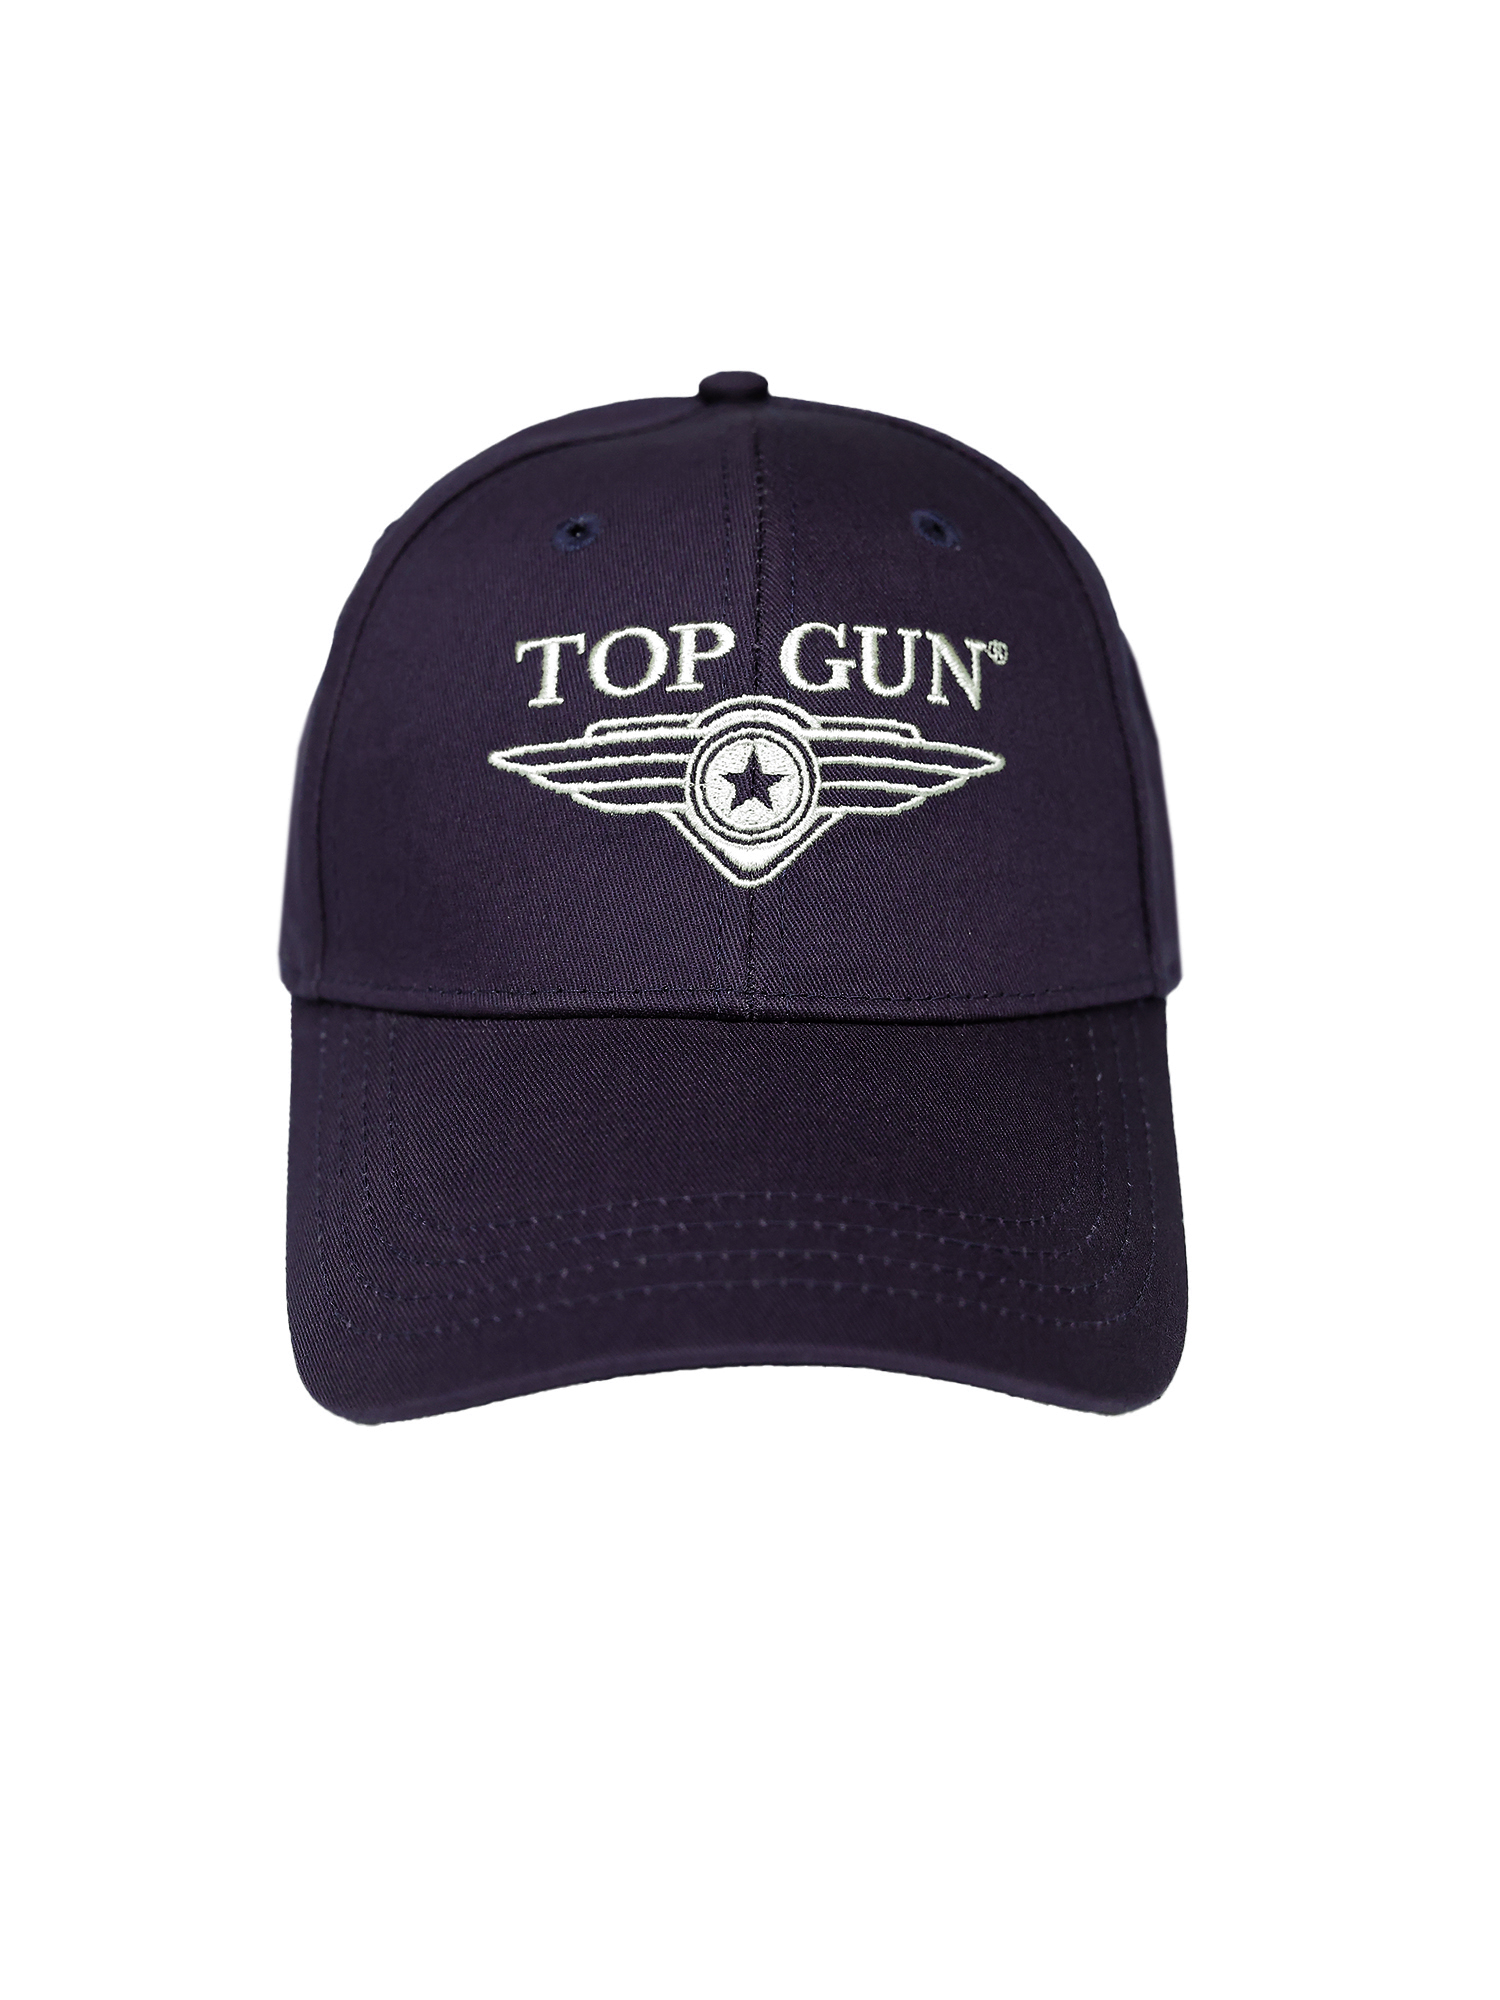 Snapback Cap | Top Shop Gun® Deutschland